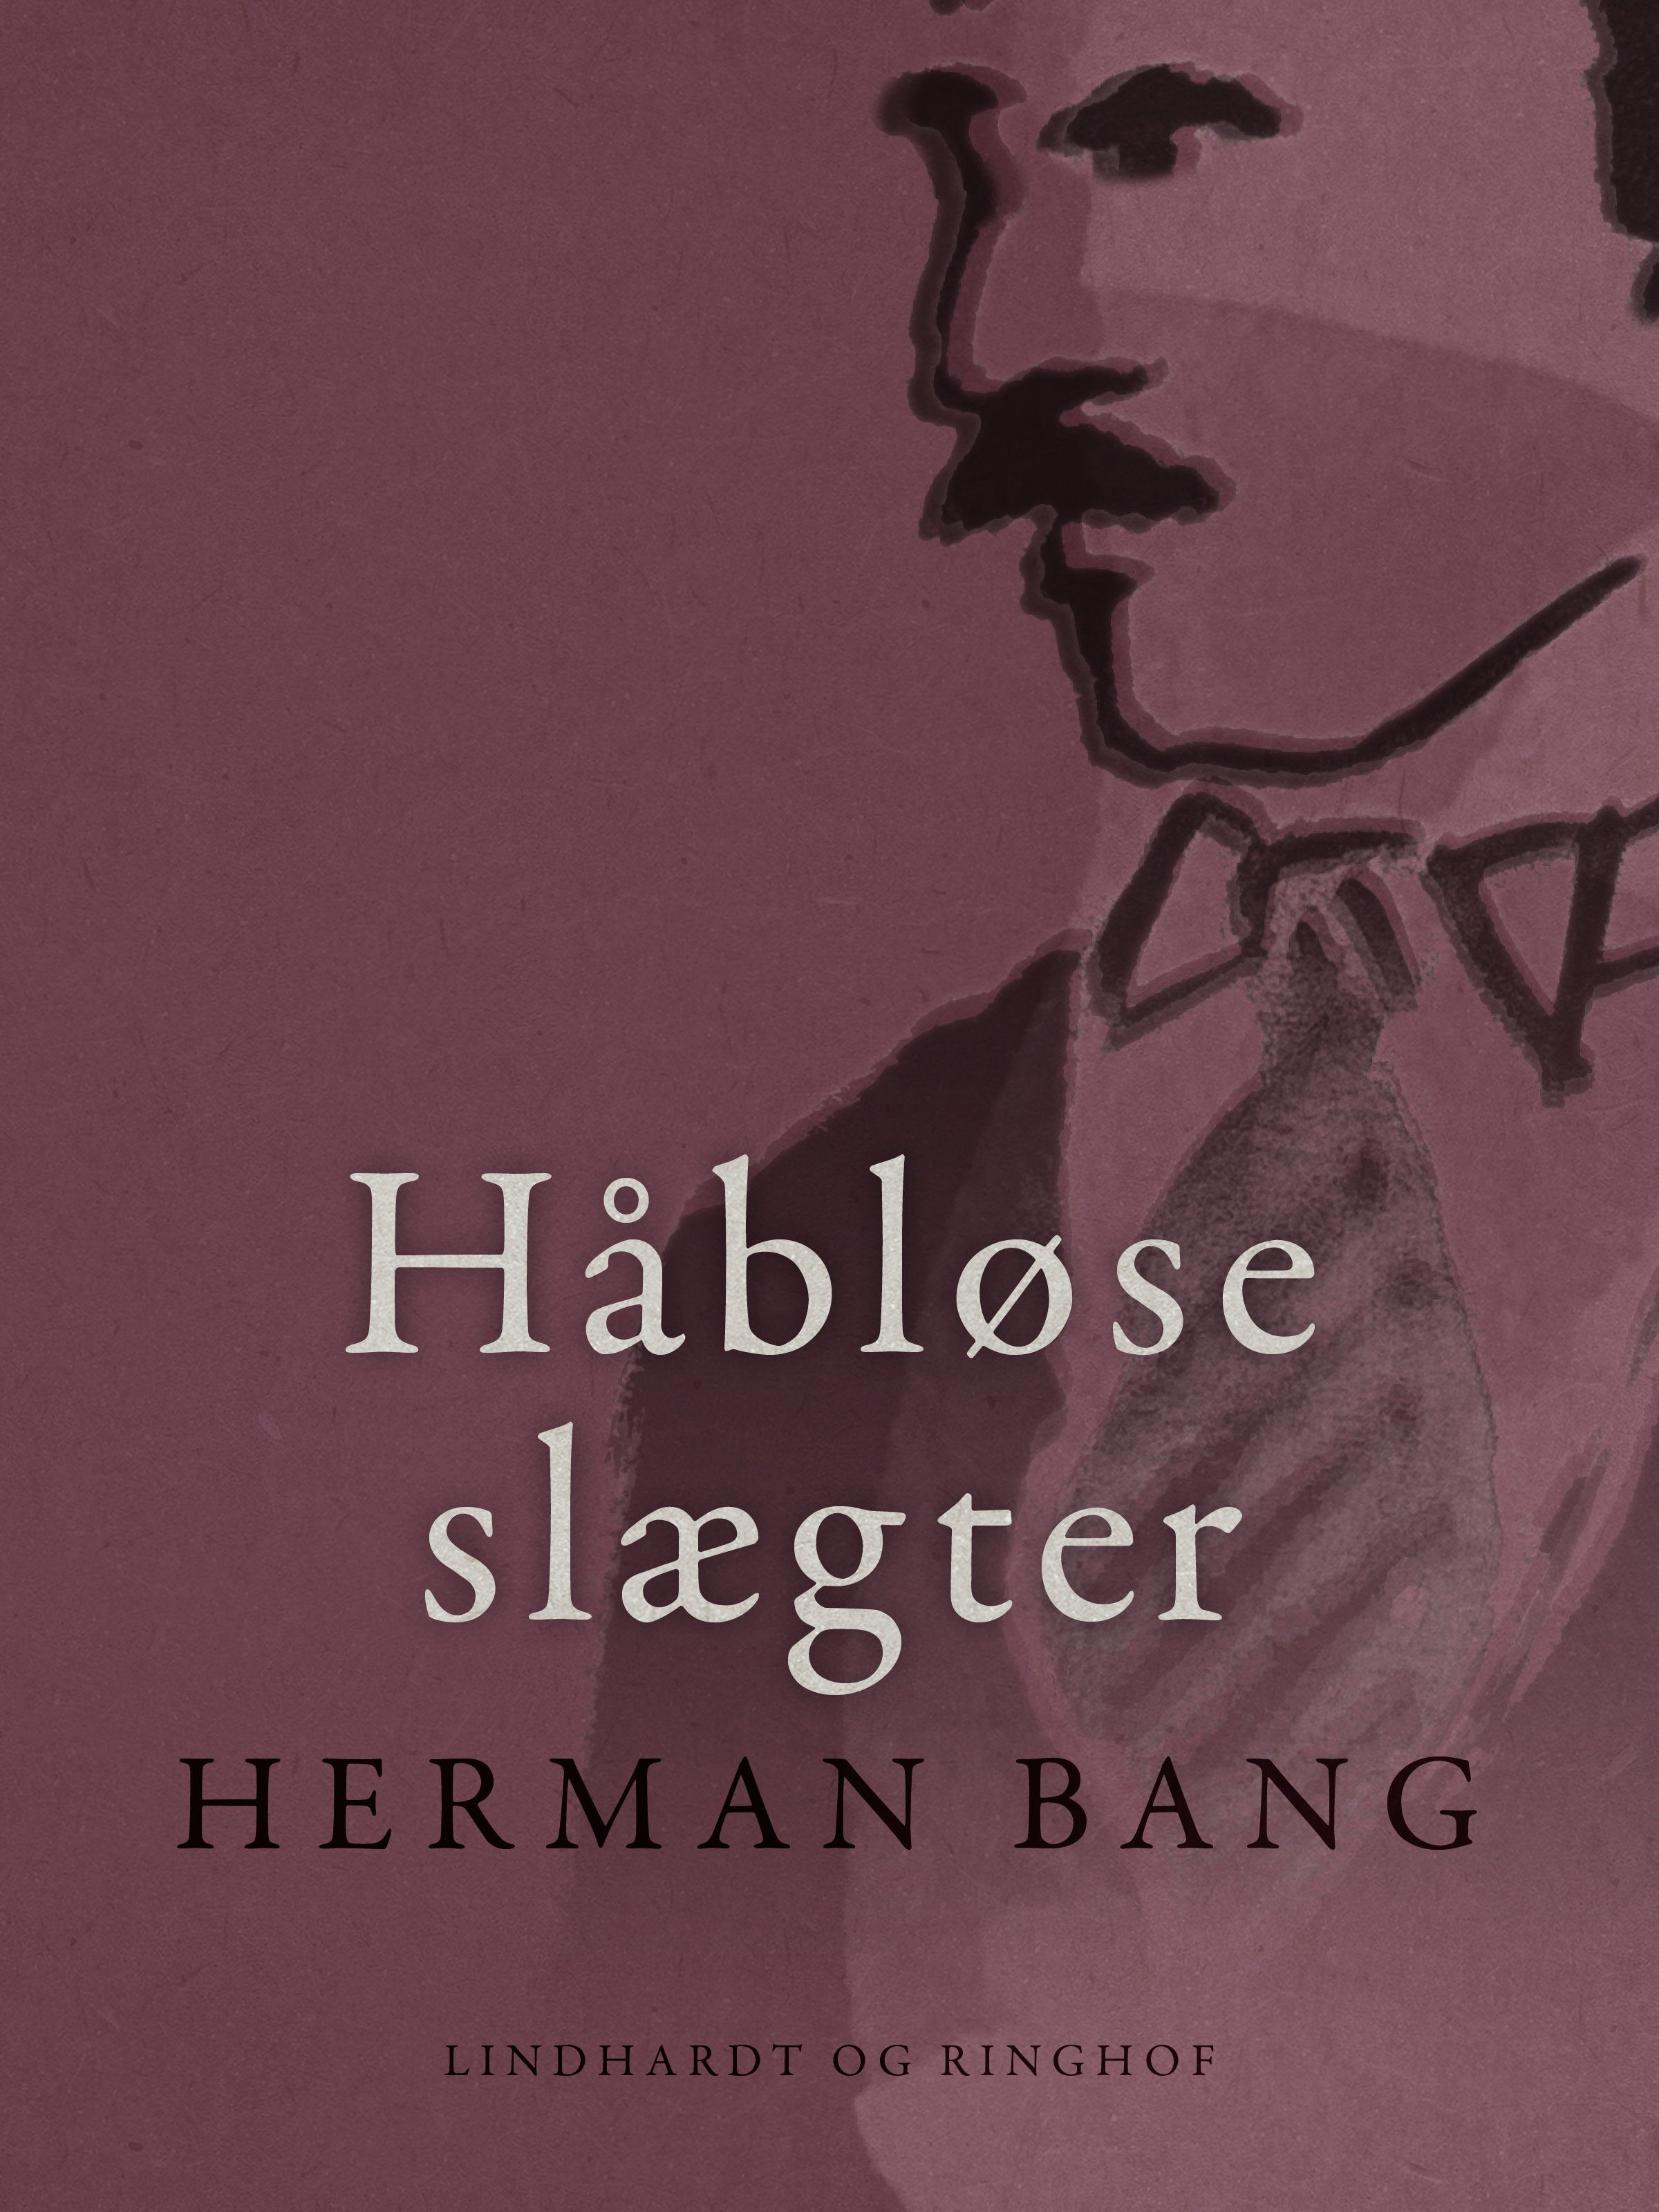 Håbløse slægter, e-bog af Herman Bang